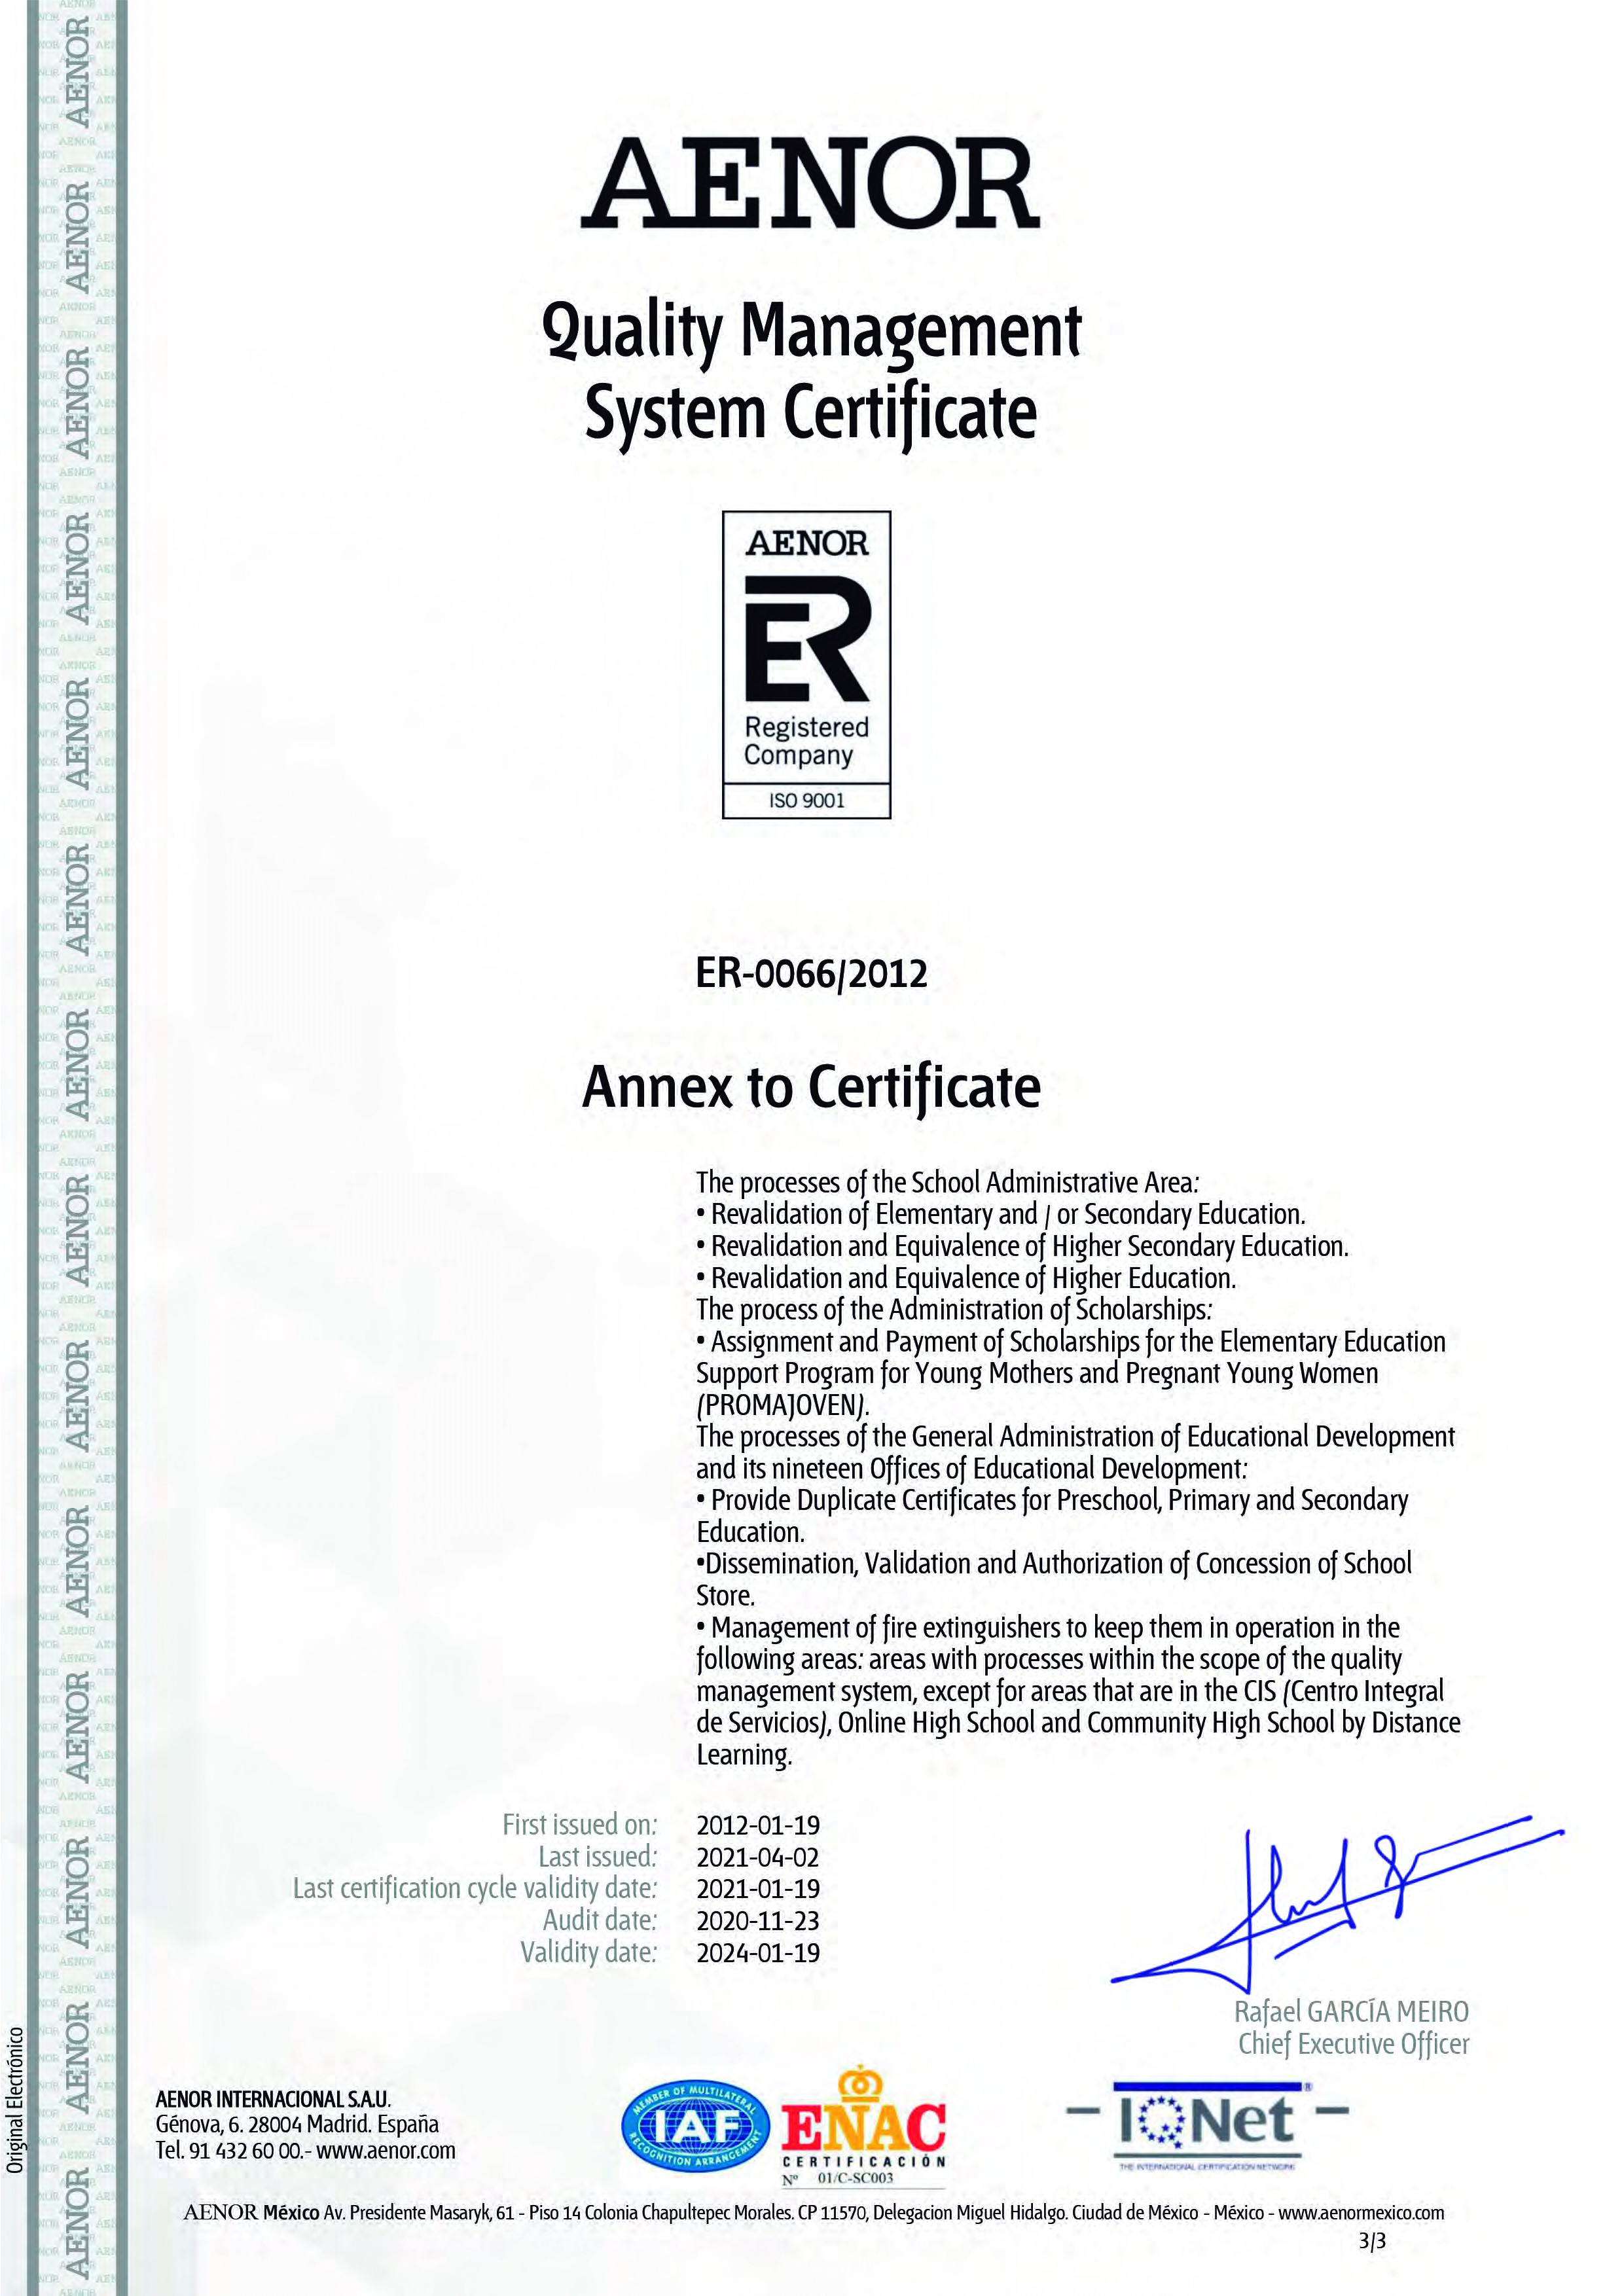 Certificación AENOR